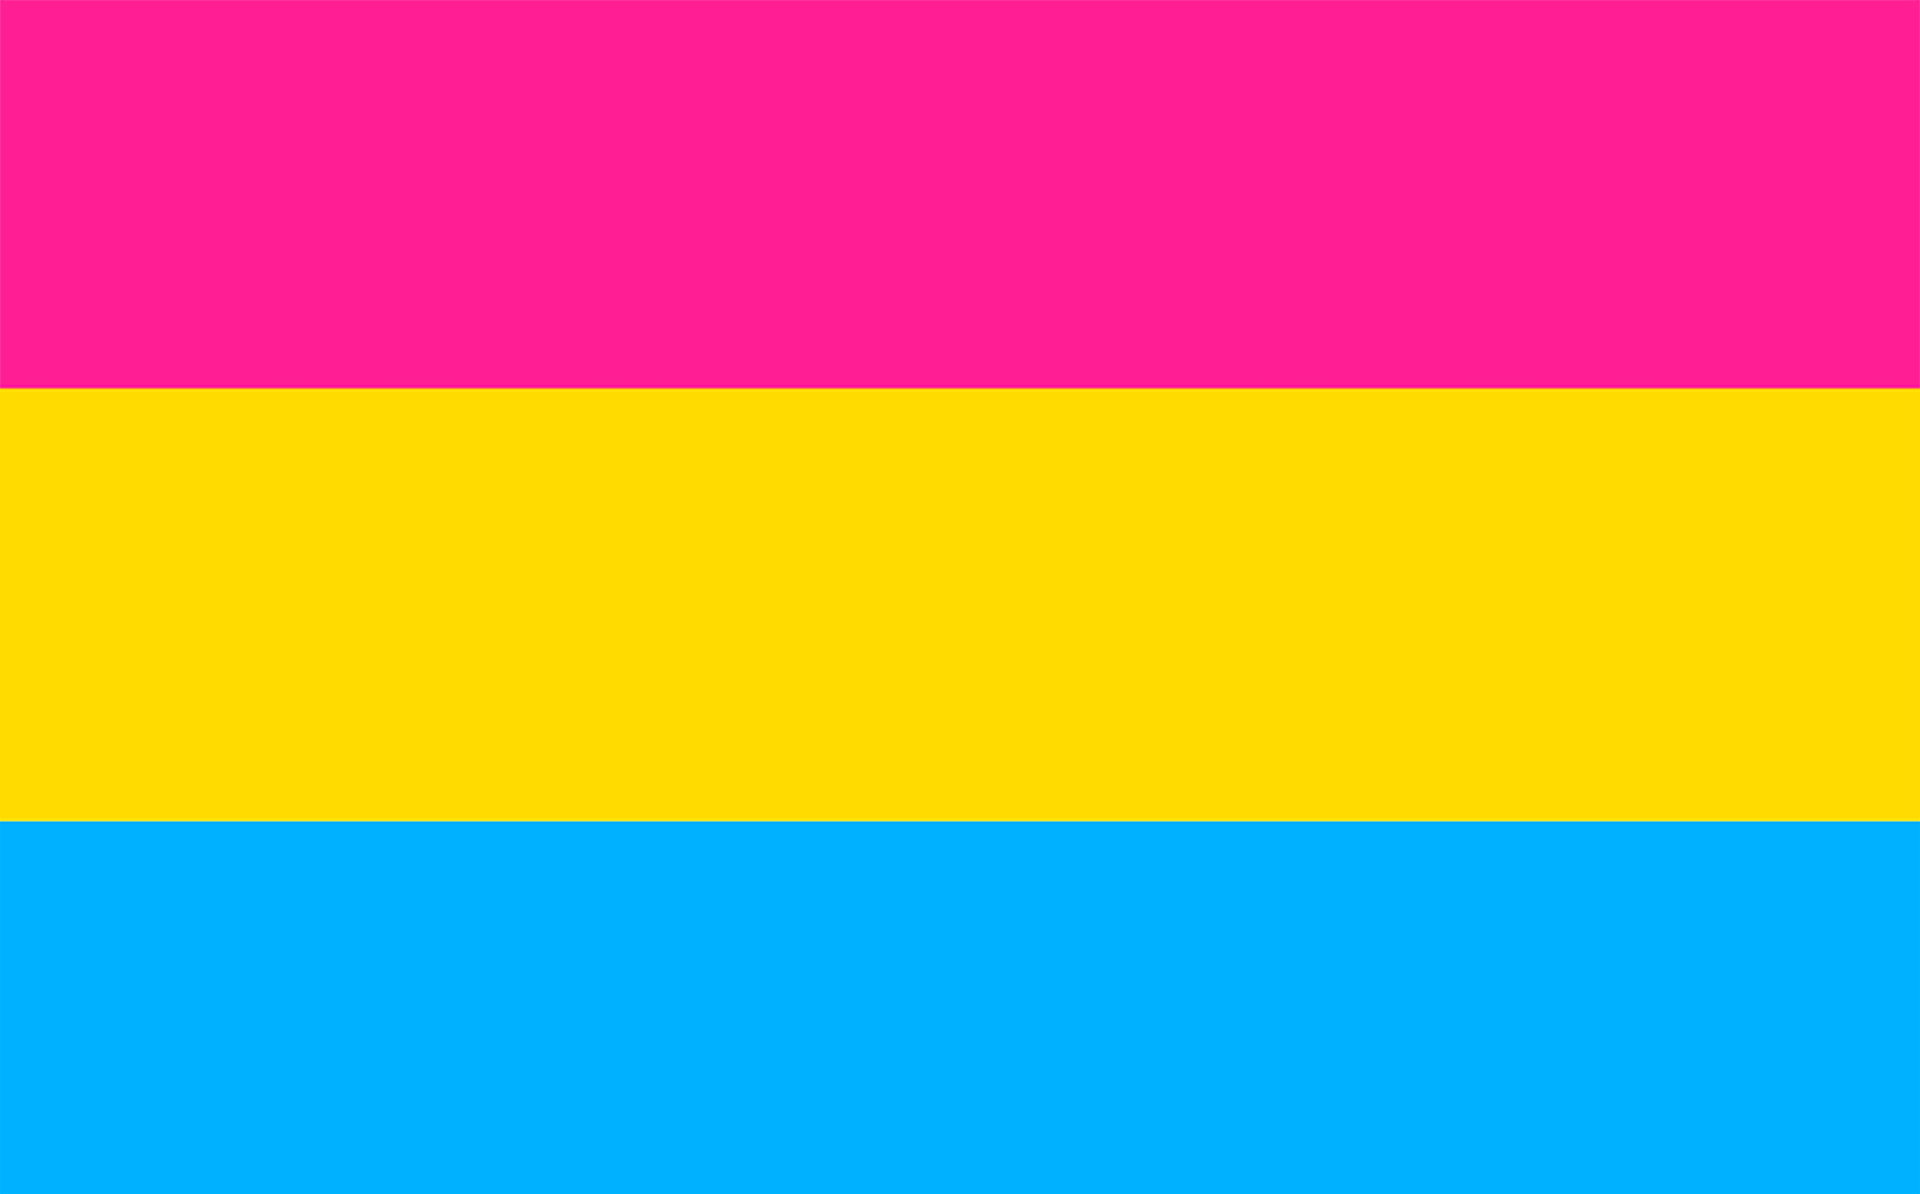 Bandera pansexual (Banderas LGBT+)